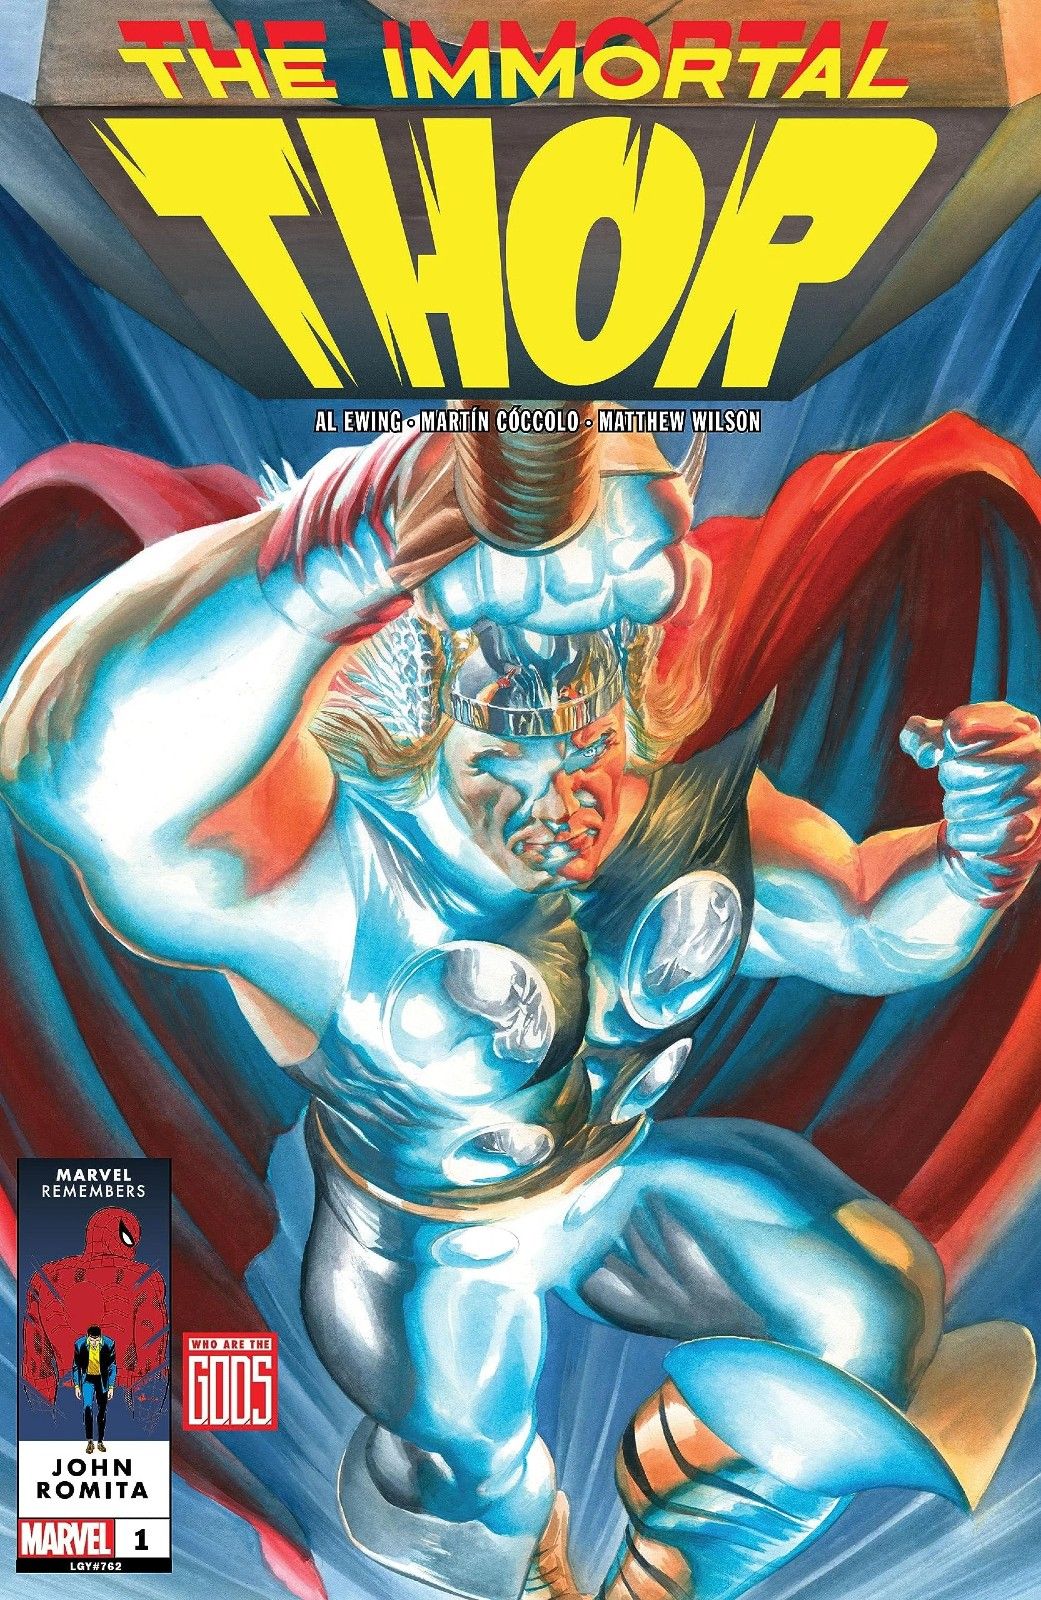 Uma versão estilizada de Thor voa com Mjolnir em Immortal Thor #1 da Marvel Comics